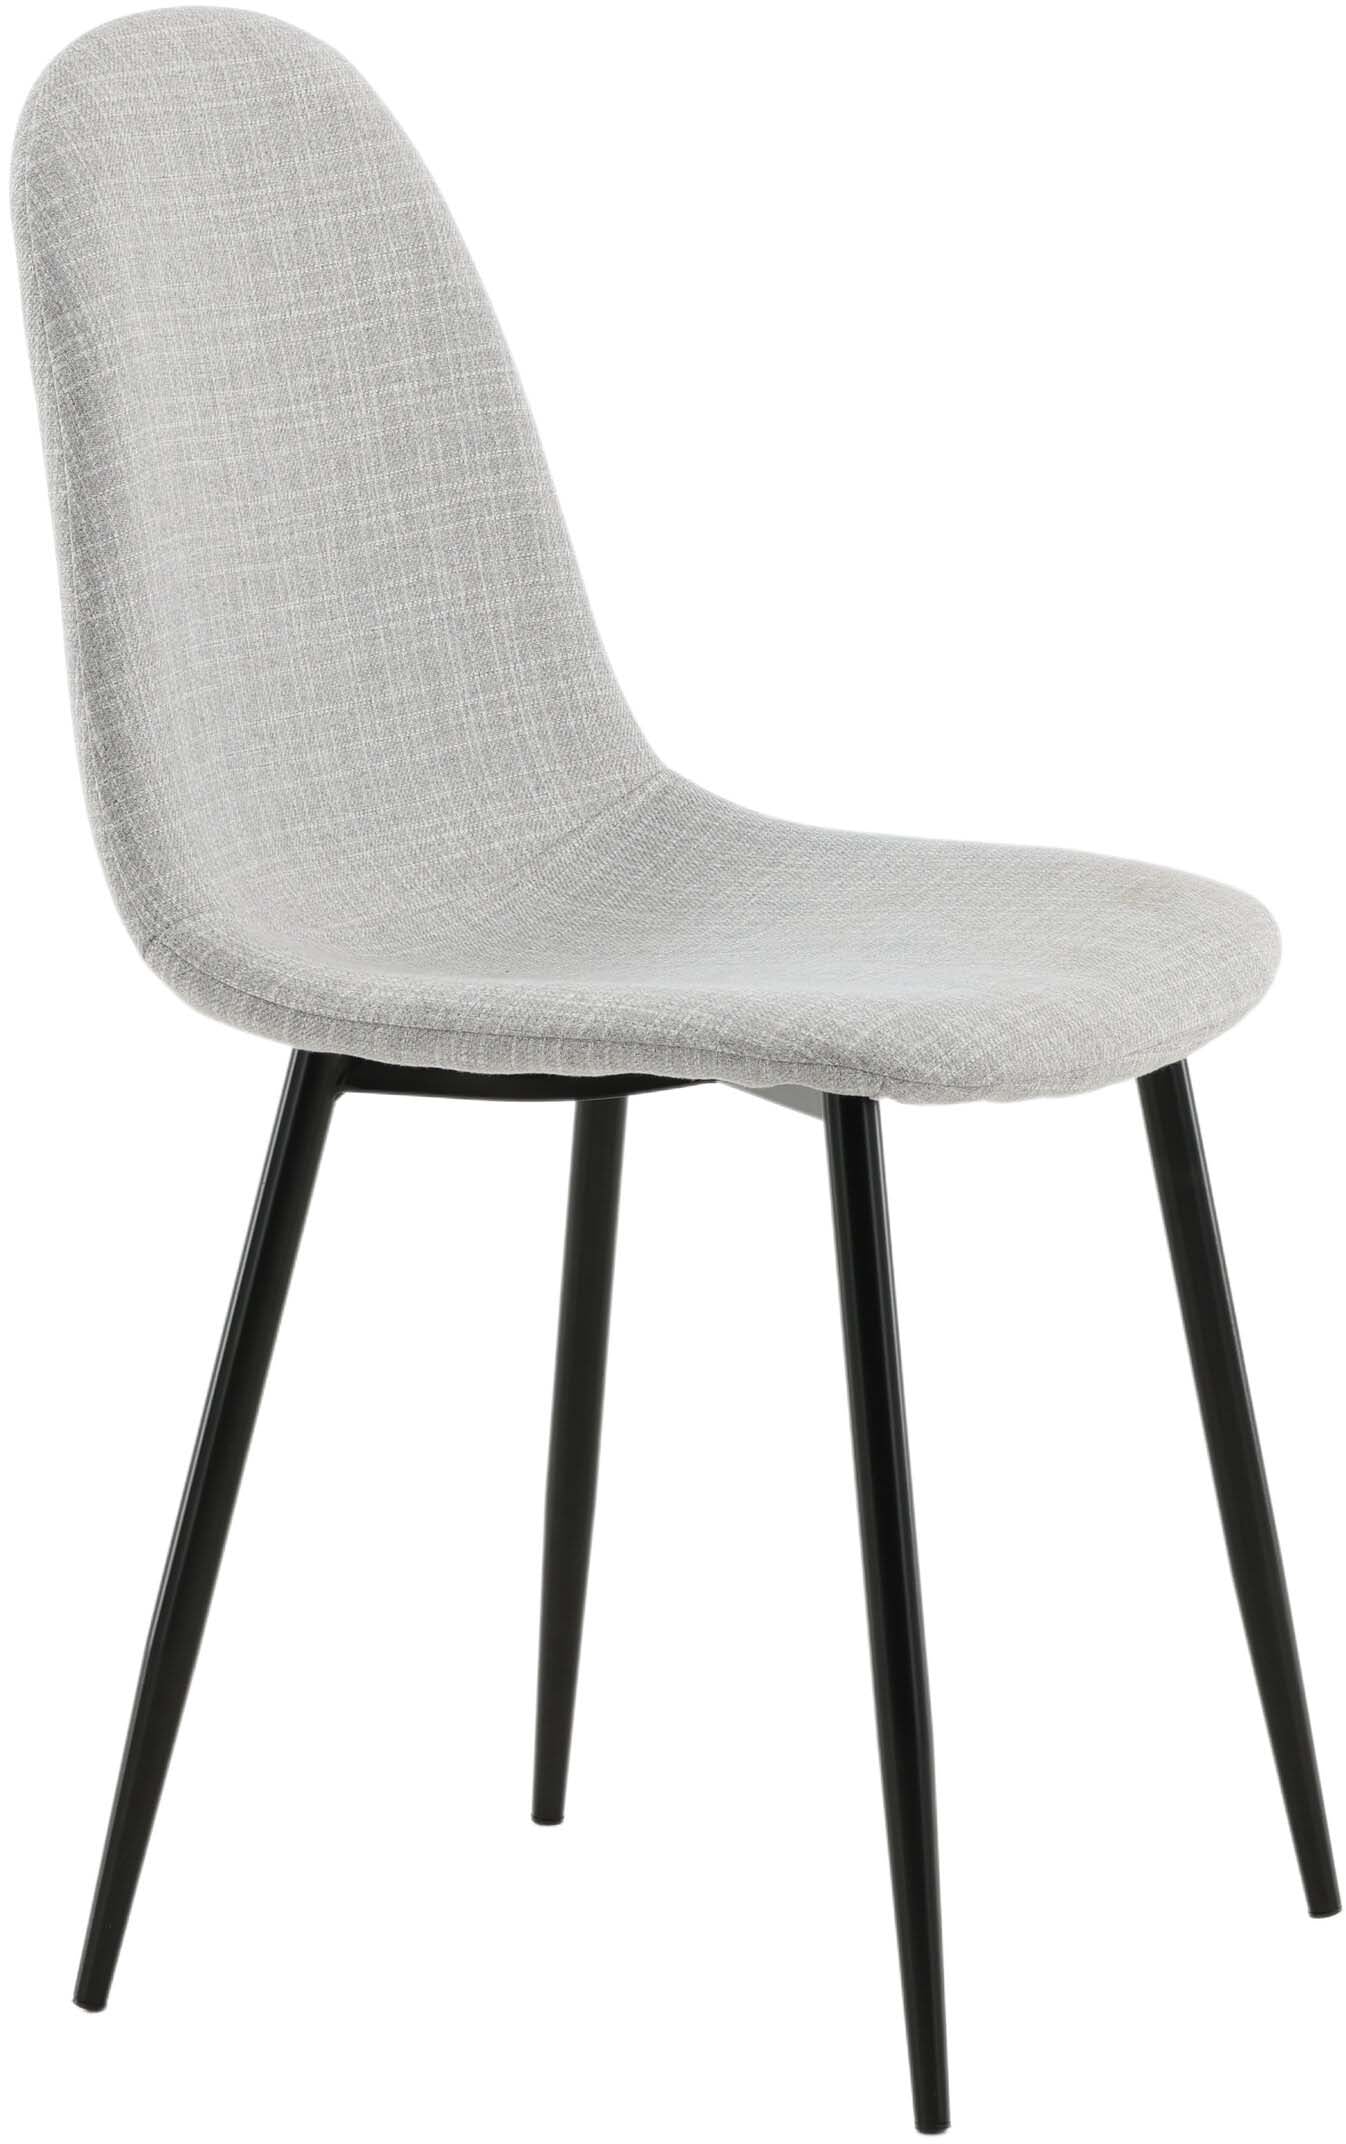 Polar Stuhl in Grau/Schwarz präsentiert im Onlineshop von KAQTU Design AG. Stuhl ist von Venture Home